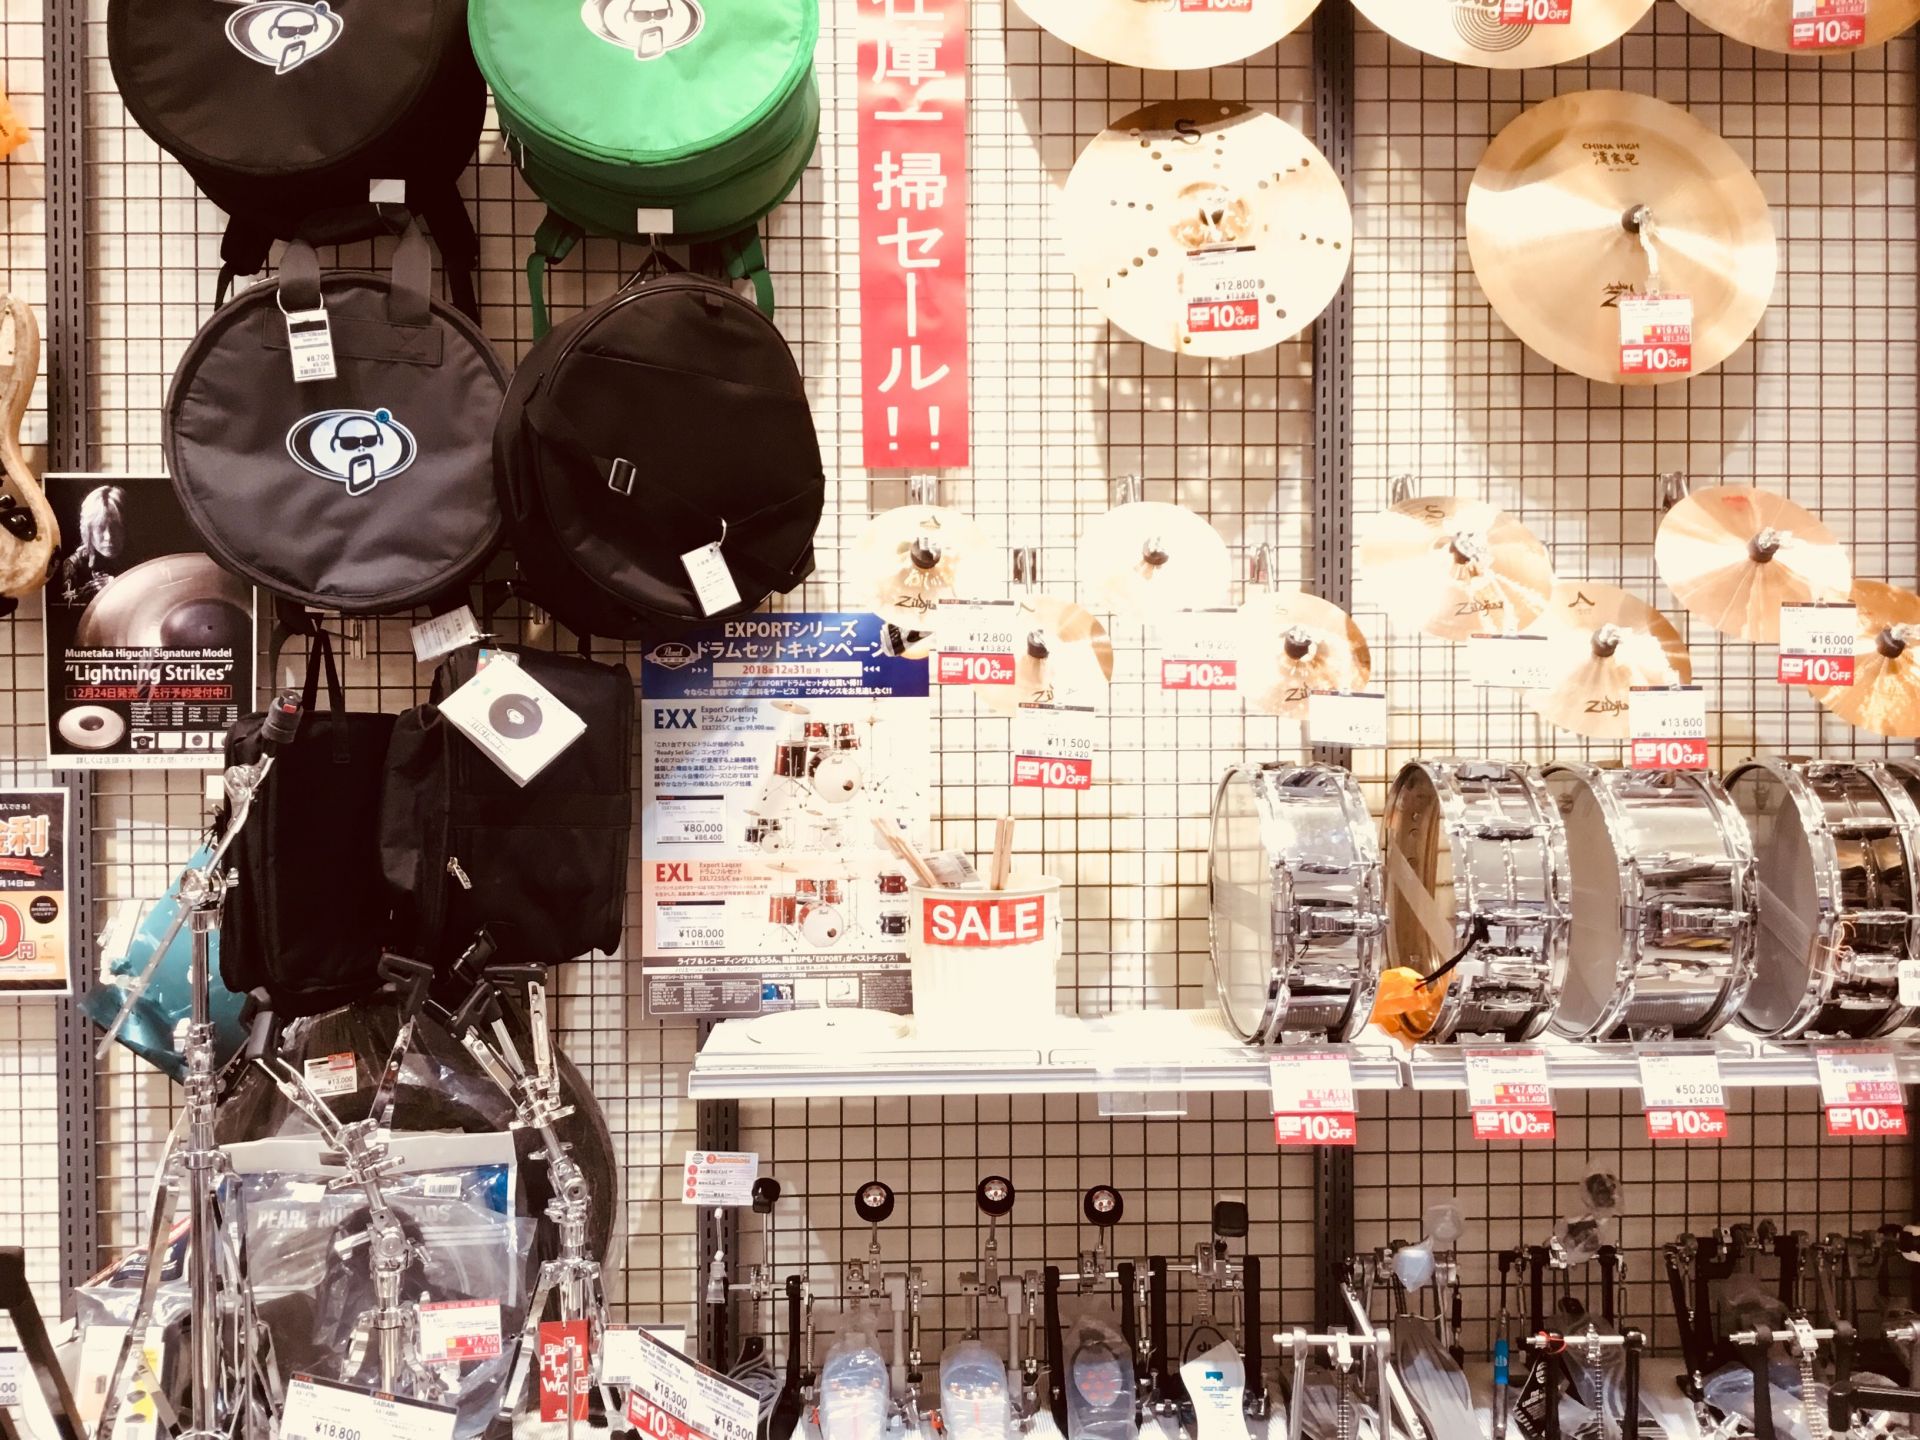 【打楽器コーナー】スネア・シンバル・ドラムペダル展示入替えのため在庫一掃セール開催中